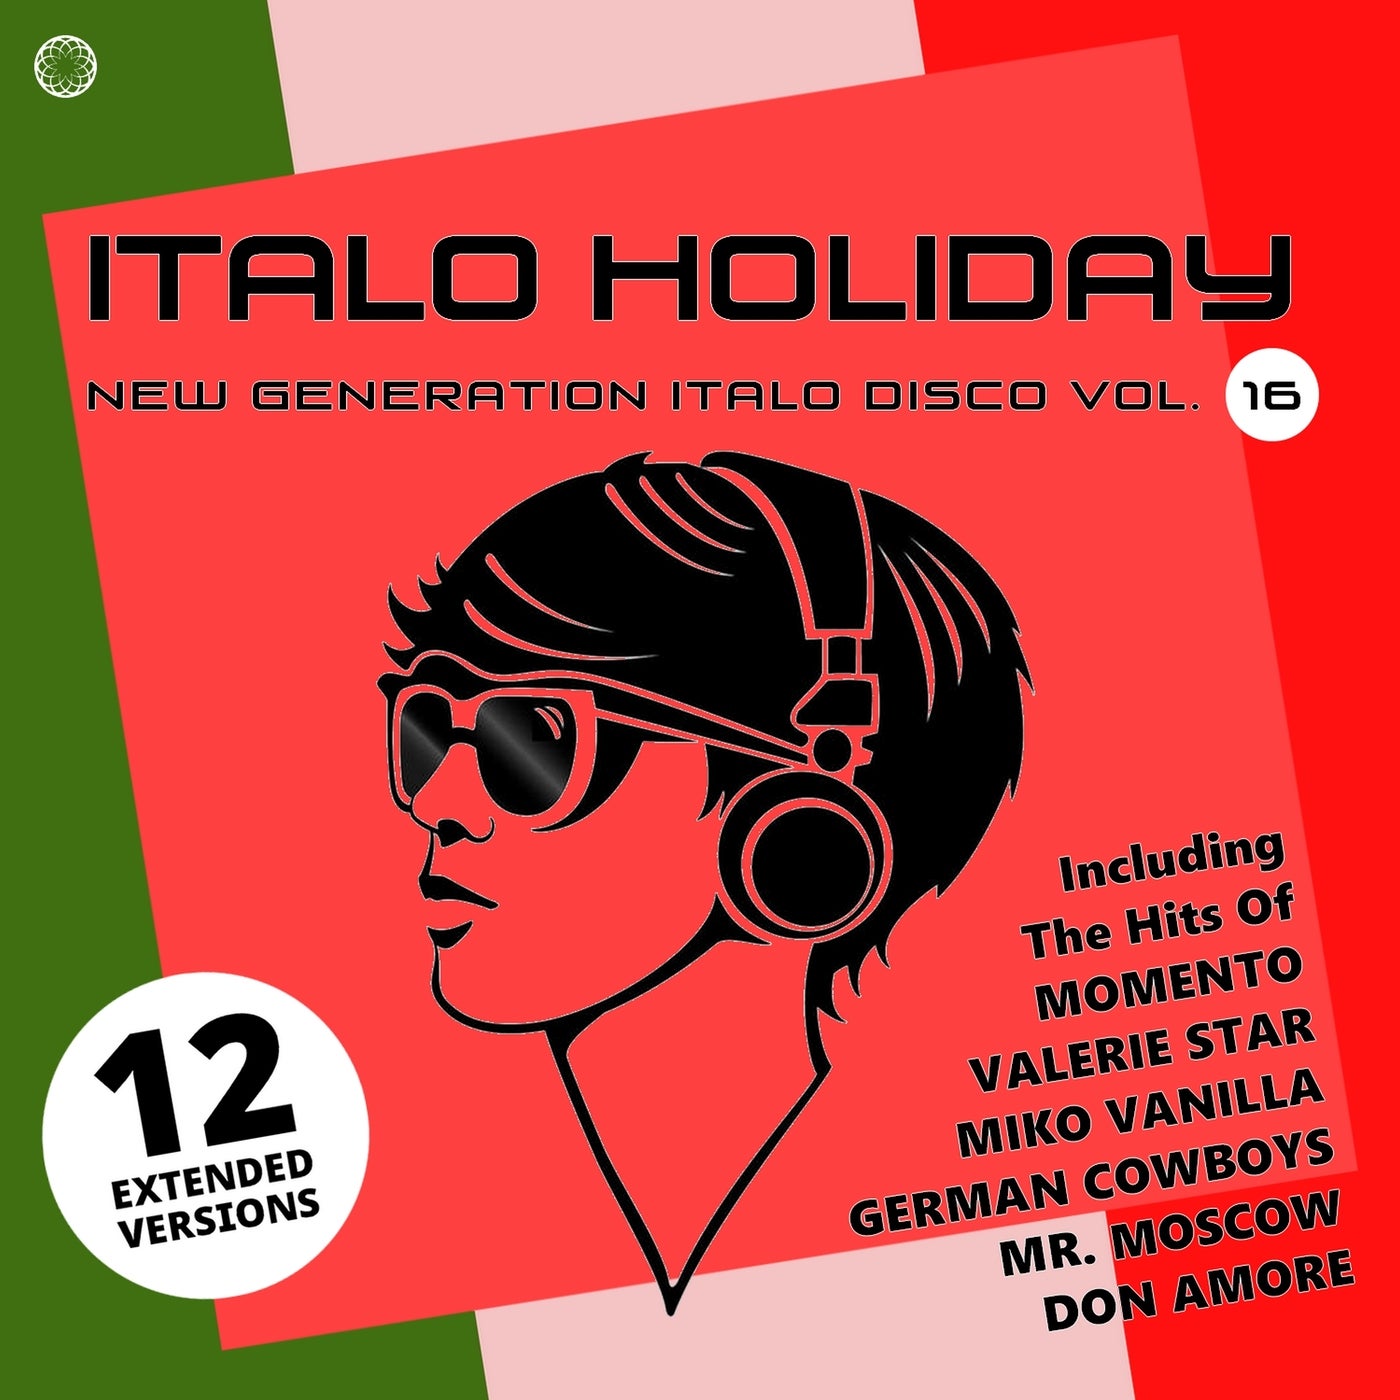 Italo Holiday, New Generation Italo Disco, Vol. 16